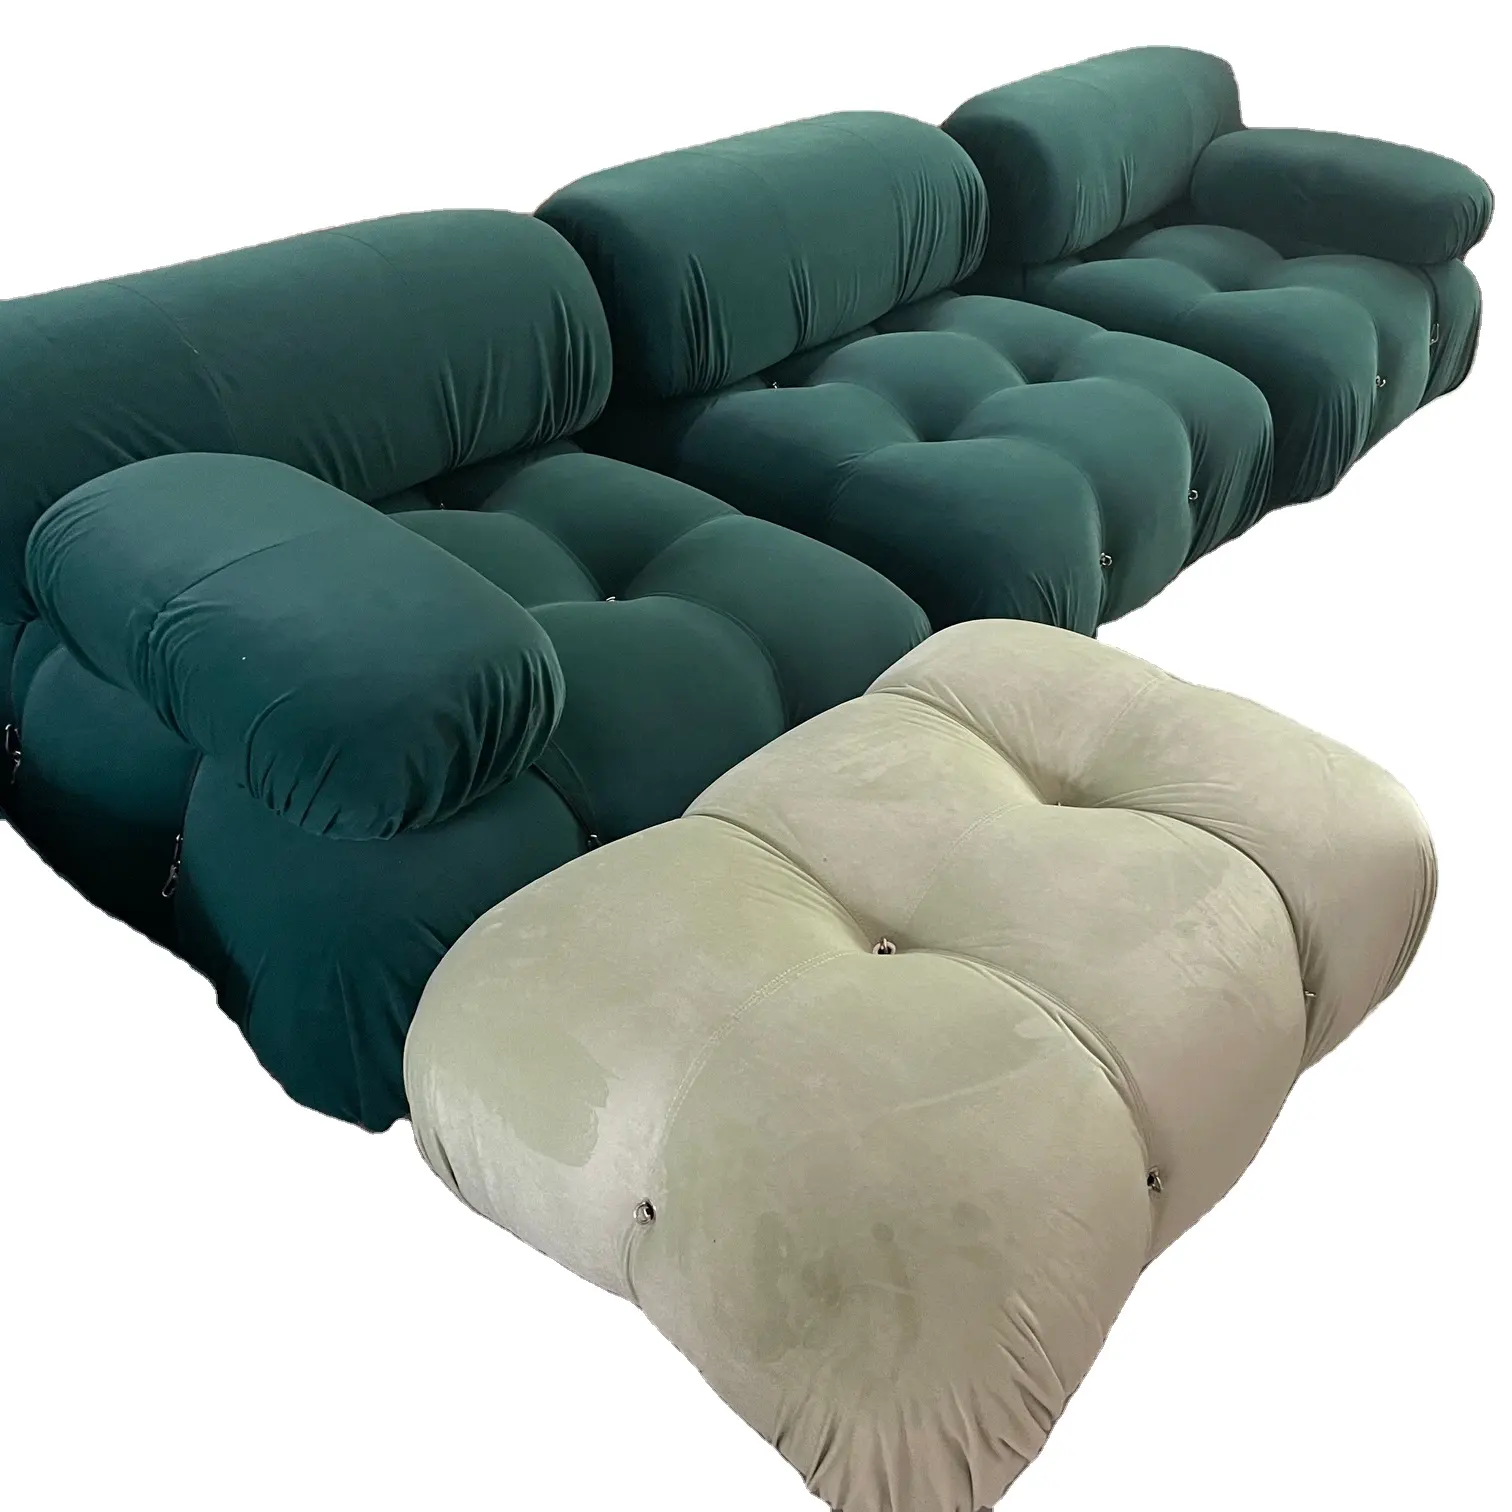 Meados do século veludo sofá clássico mobiliário design secional sofá para sala de estar mario lazer combinação sofá